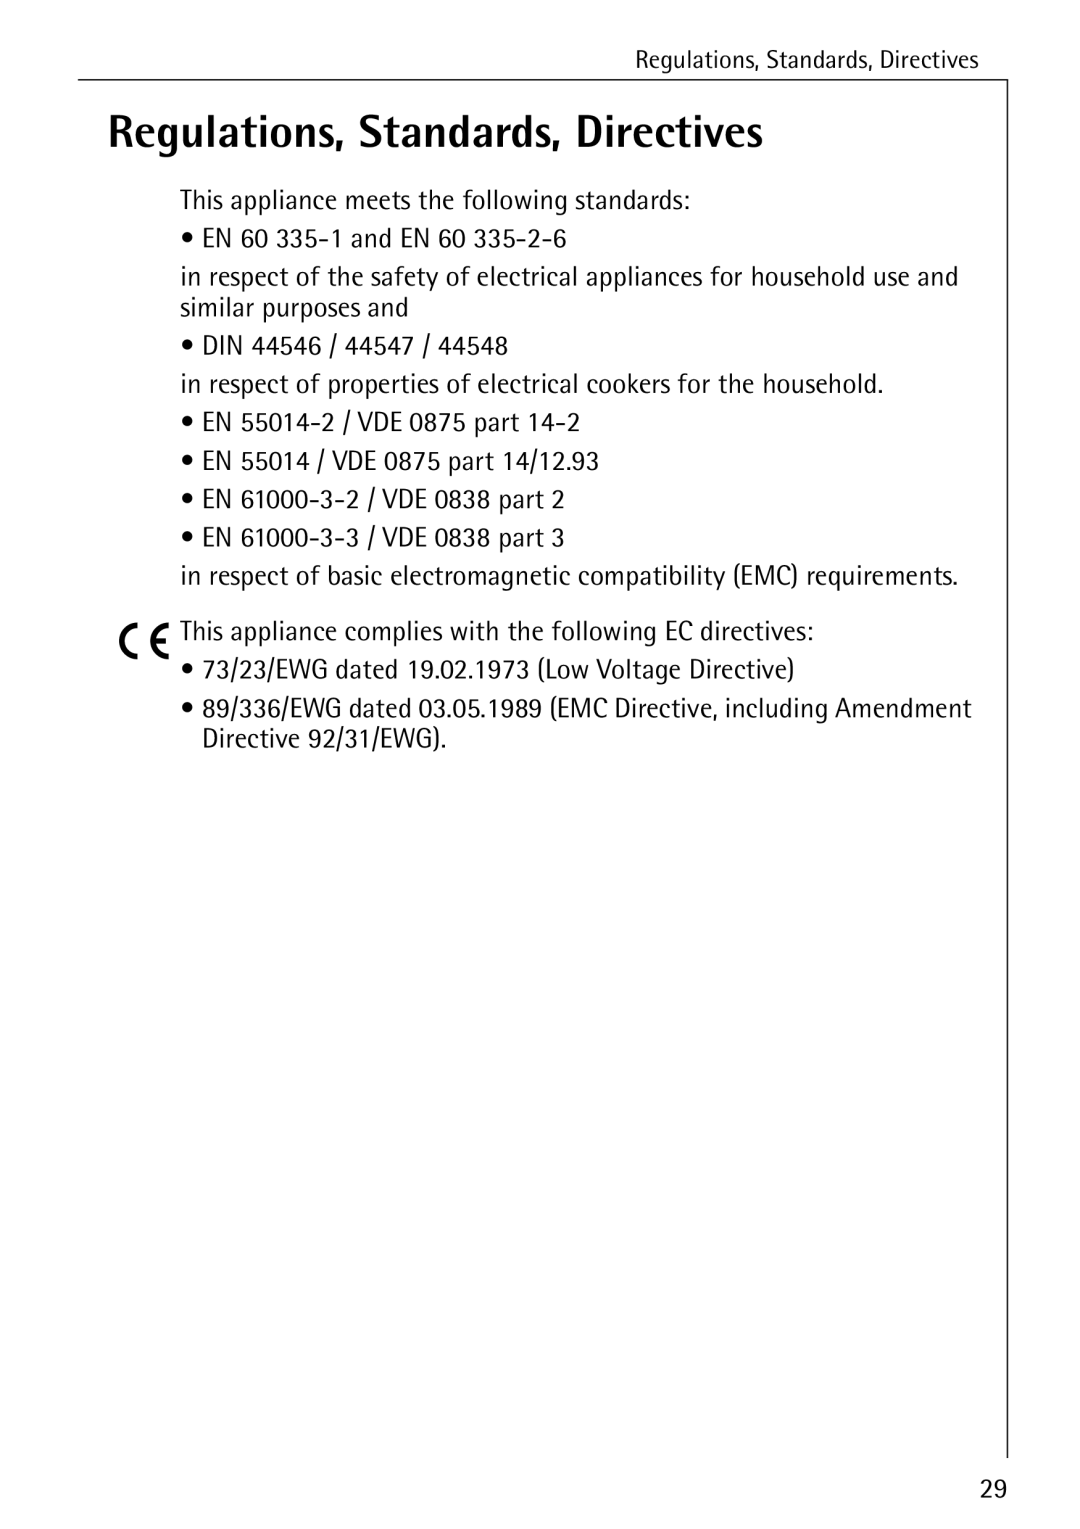 Electrolux 6500 K manual Regulations, Standards, Directives 